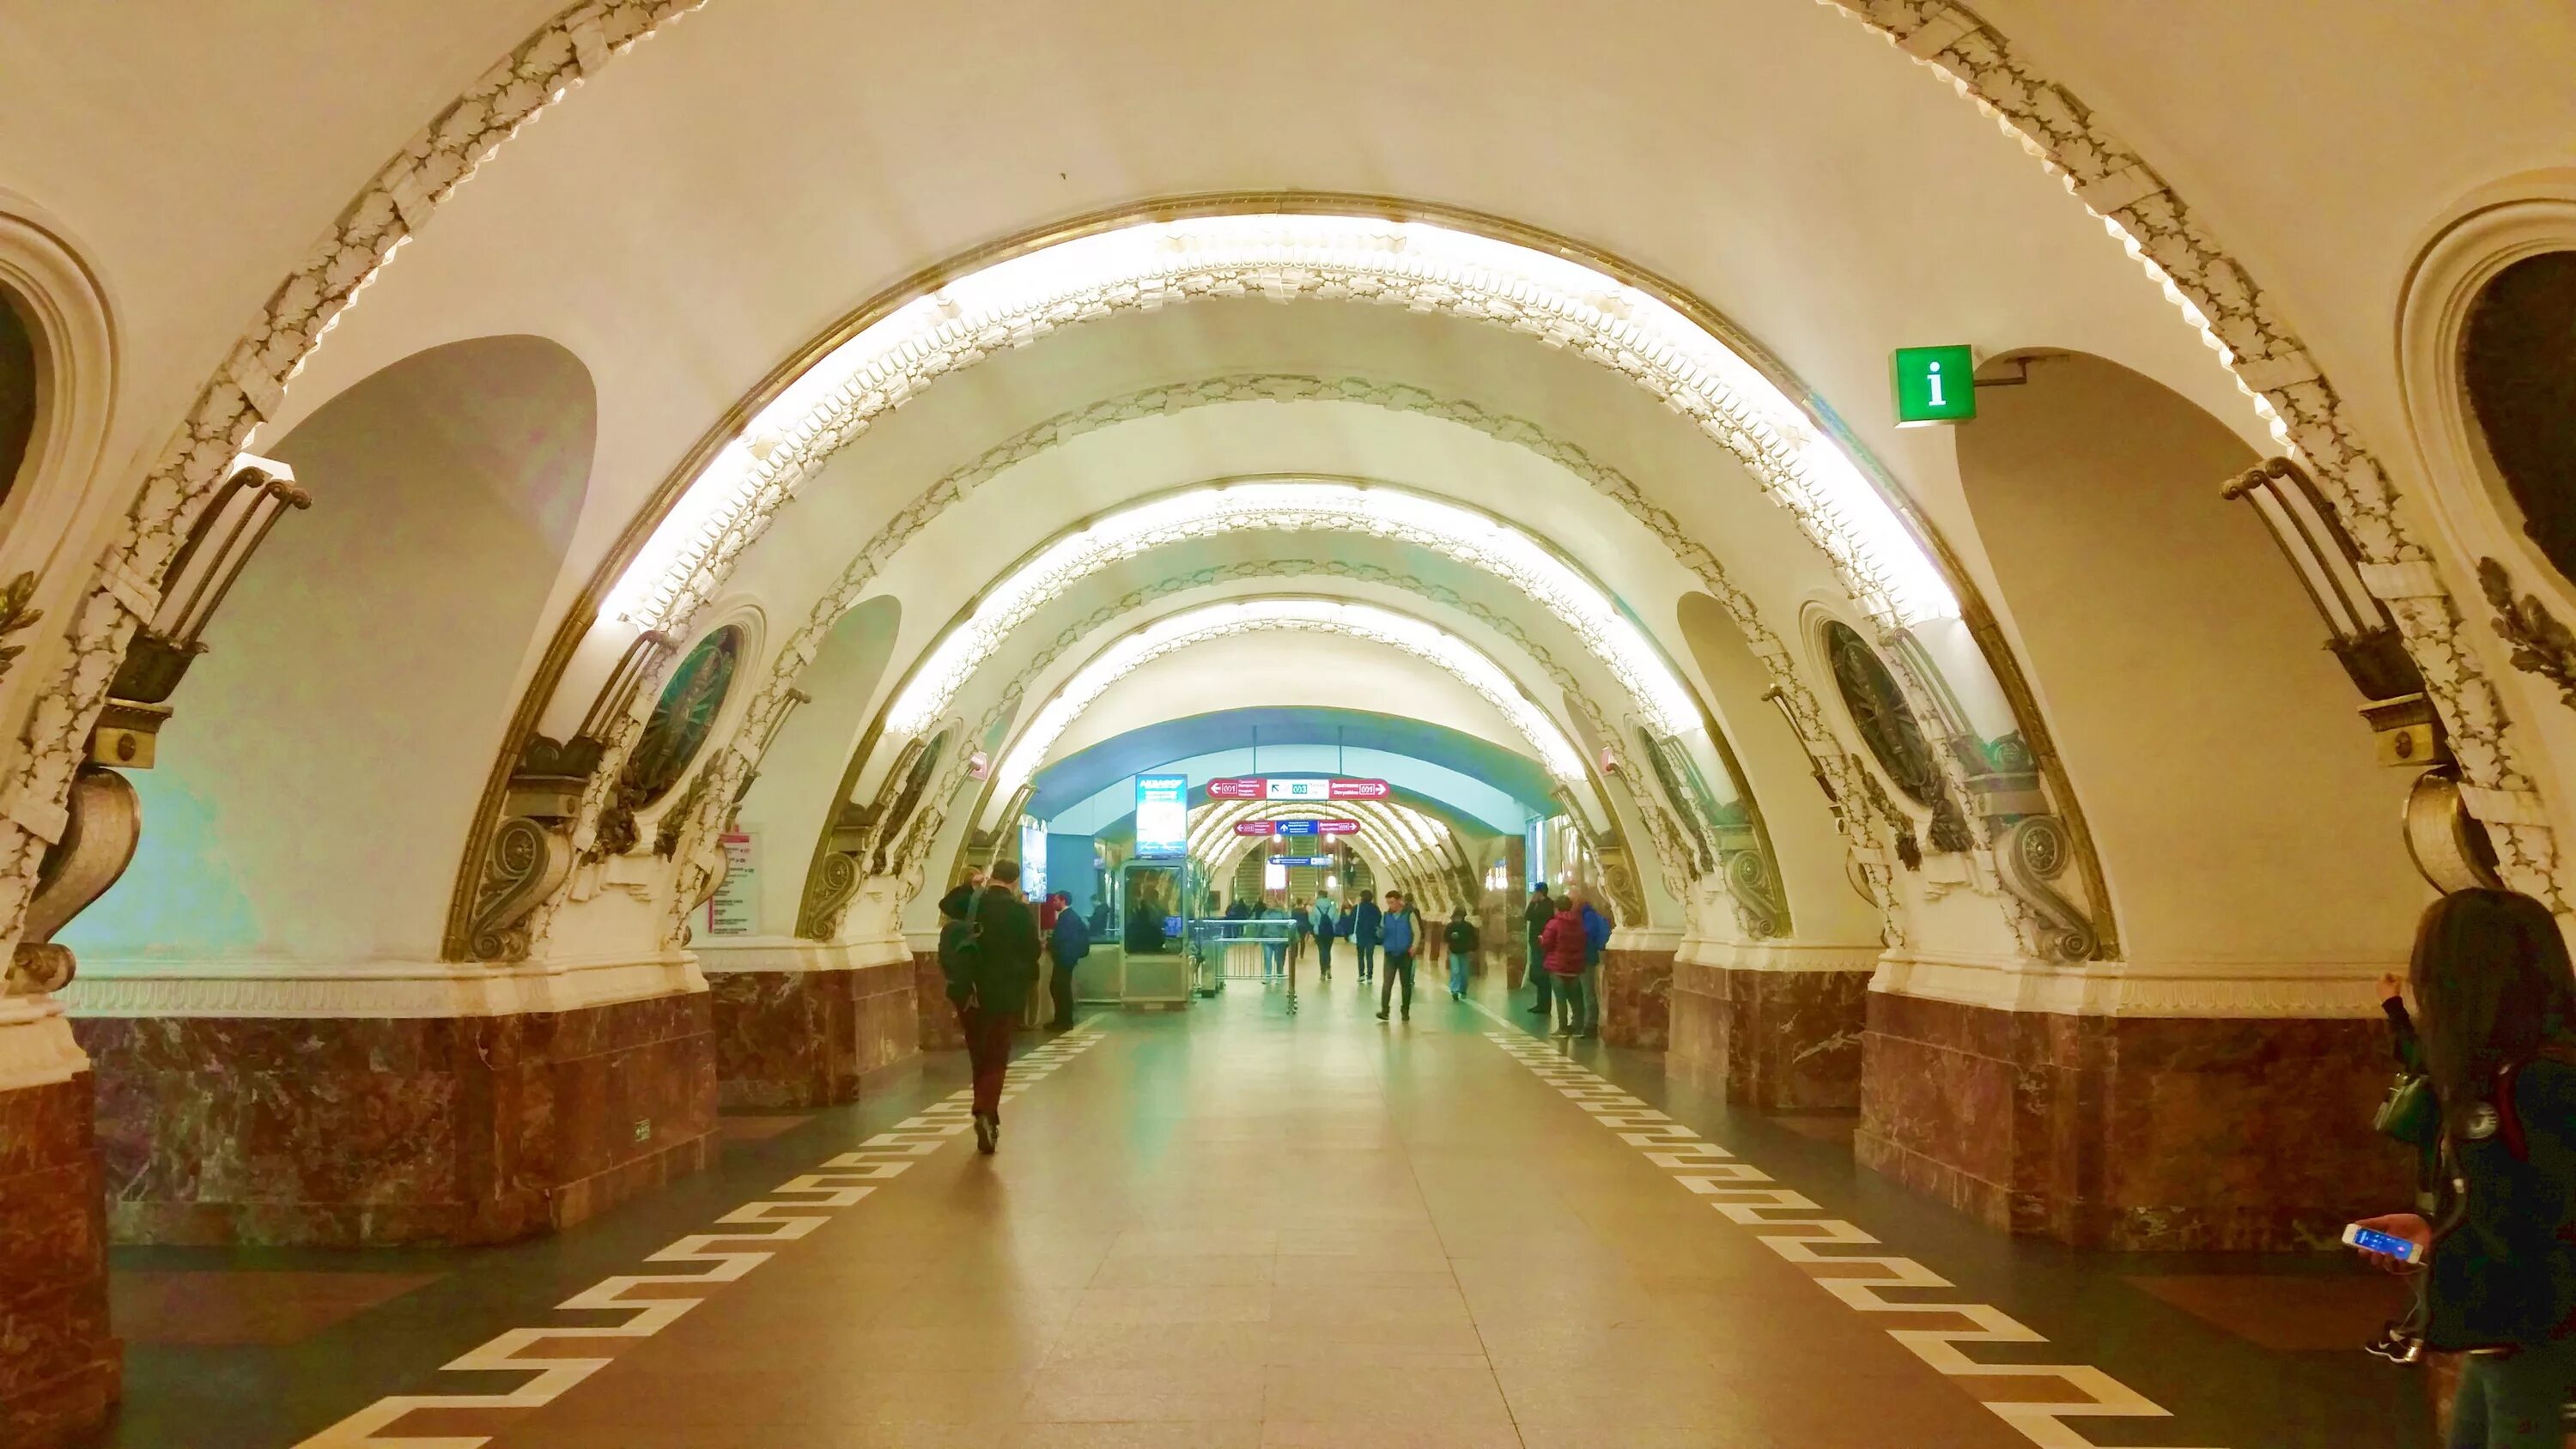 Станция площадь Восстания. Площадь Восстания Санкт-Петербург метро. Станция метро площадь Восстания. Станция метро площадь Восстания СПБ.